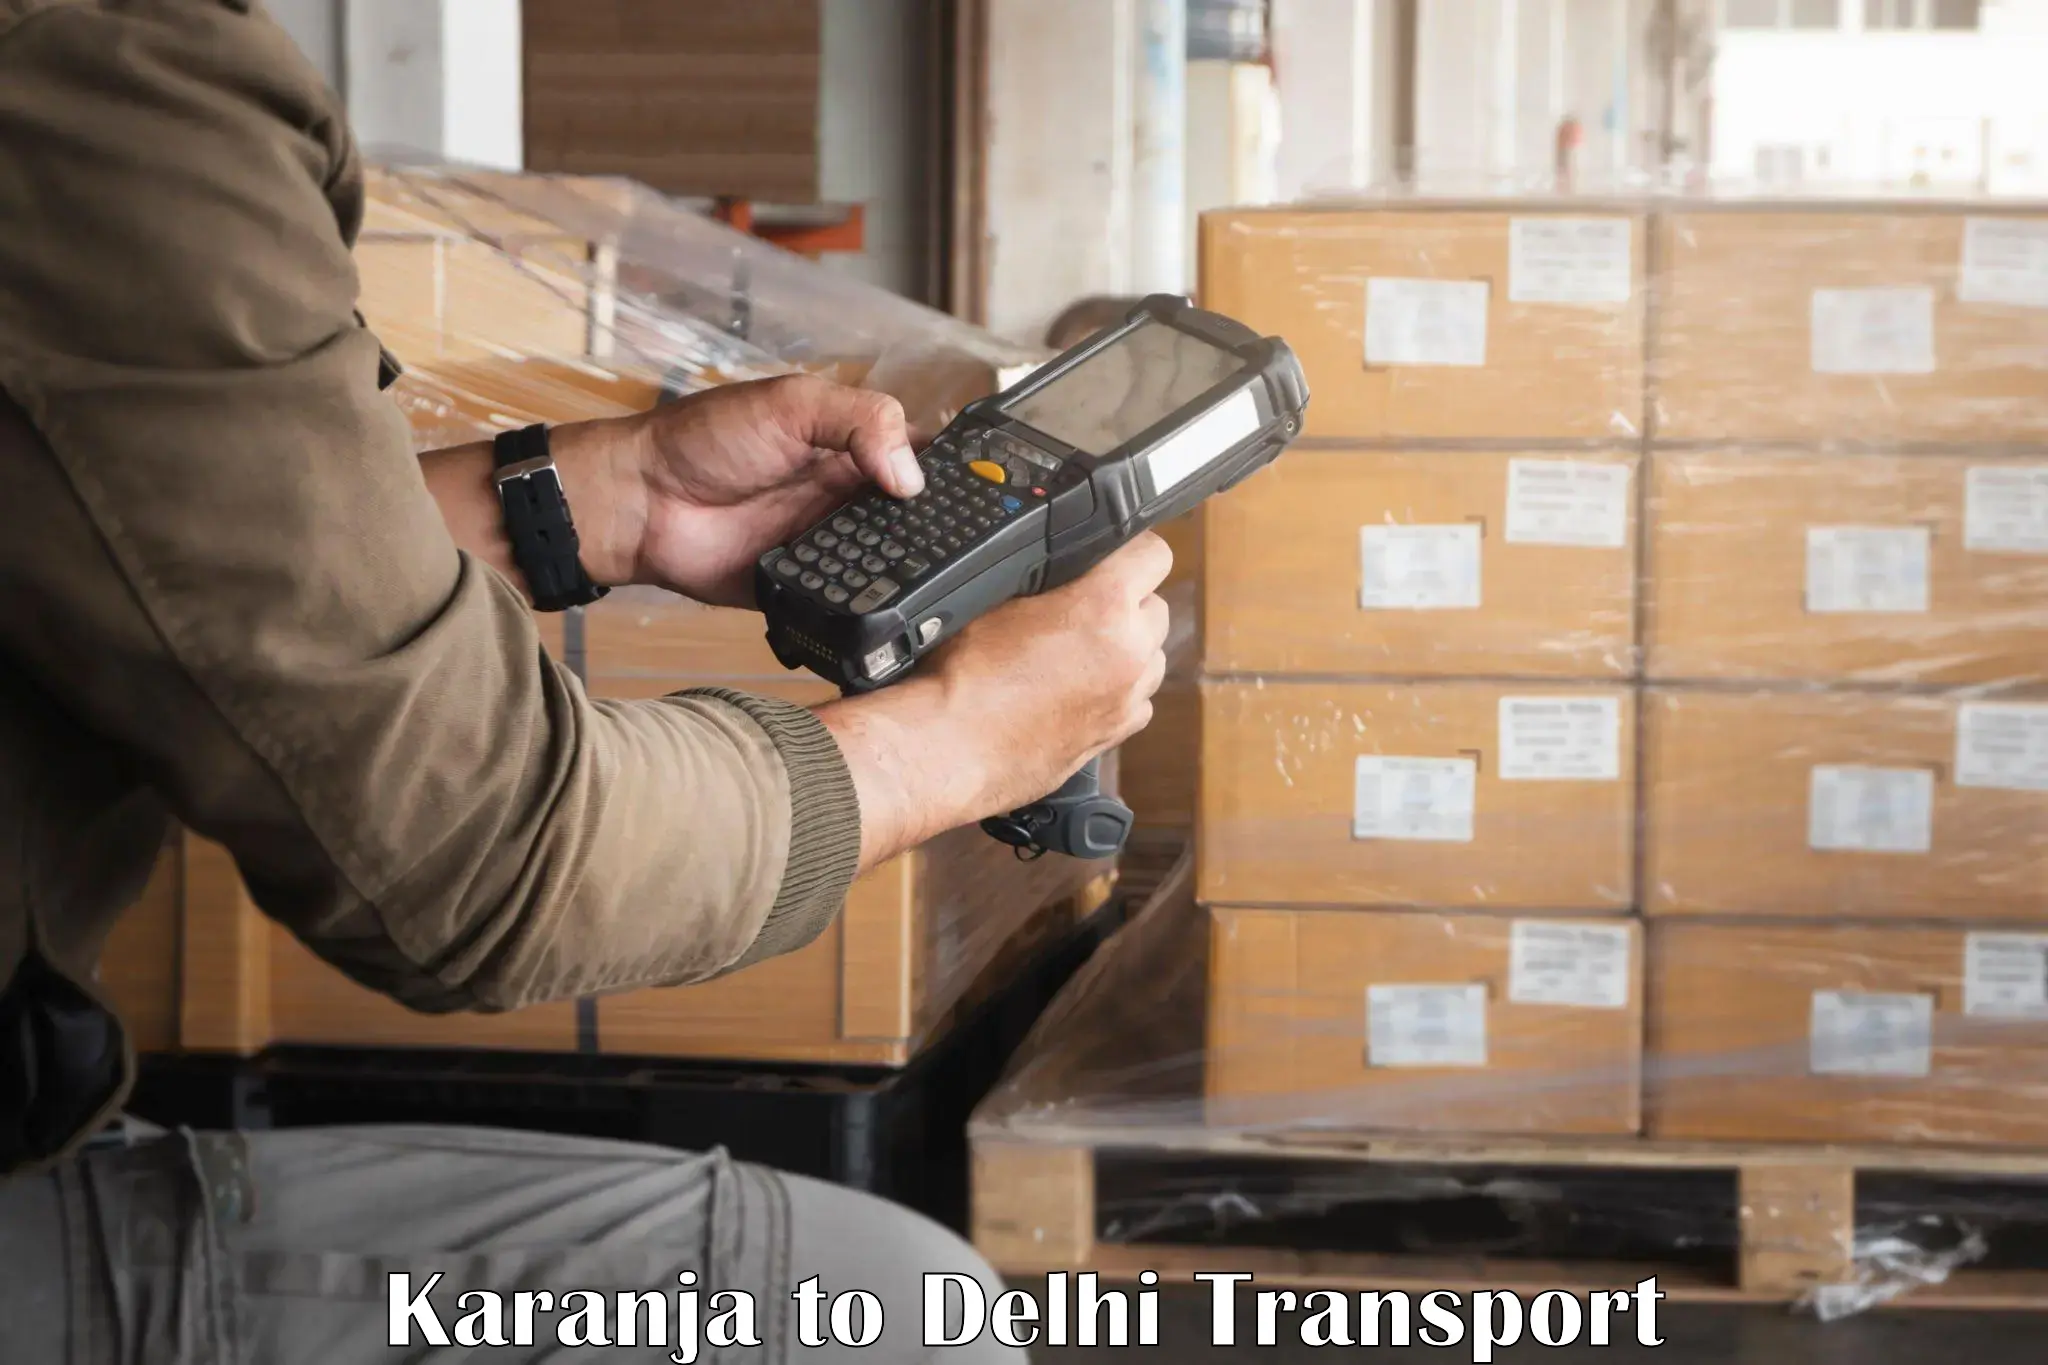 India truck logistics services Karanja to NIT Delhi